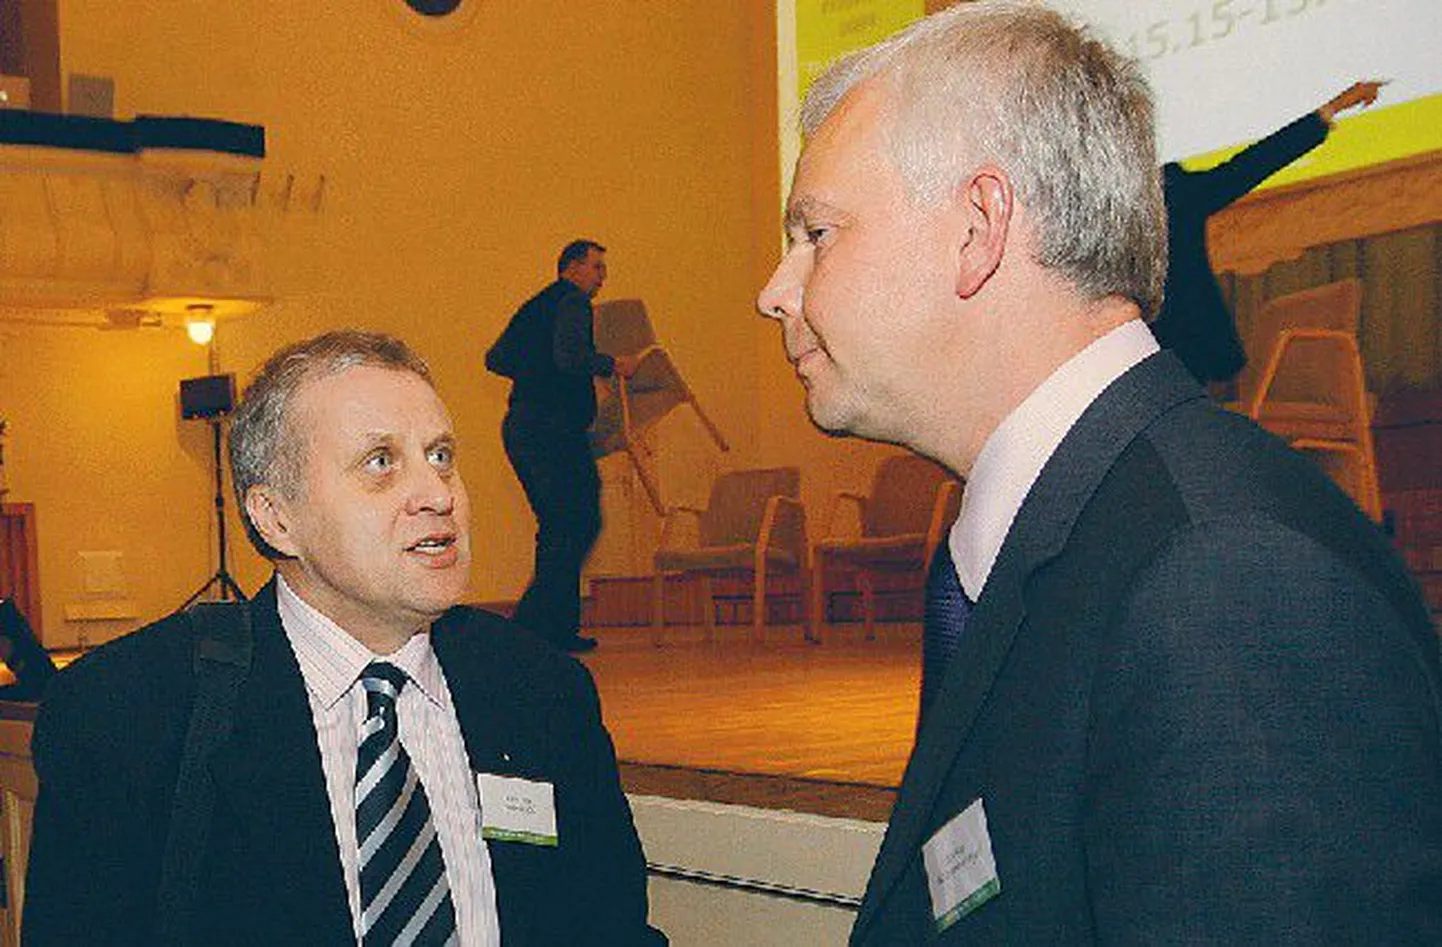 Ettevõtjad Rein Kilk (vasakul) ja Jüri Käo kinnitavad, et Eesti ei tohi mingil juhul eurole ülemineku võimalust käest lasta. Käo sõnul aitaks euro taastada meie majanduse usaldusväärsuse.